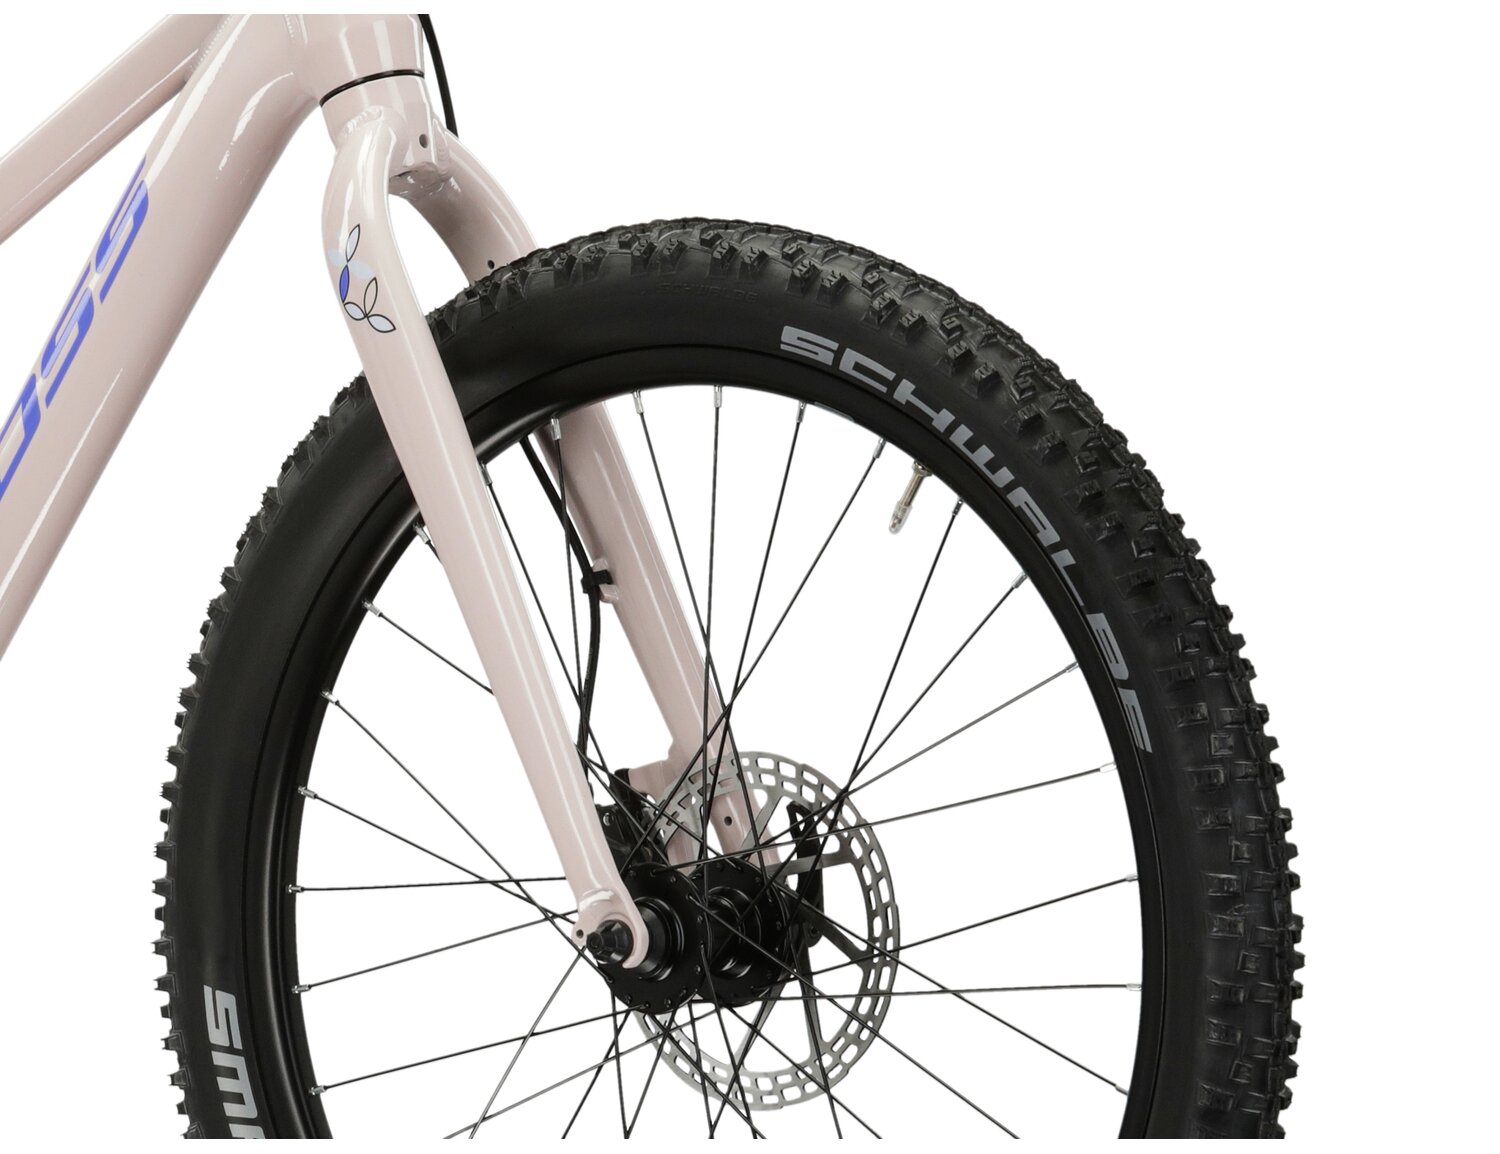 Aluminiowa rama, sztywny aluminiowy widelec oraz opony SCHWALBE SMART SAM o szerokości 2,45 cala w rowerze juniorskim dziewczęcym górskim Kross Lea JR 2.0 